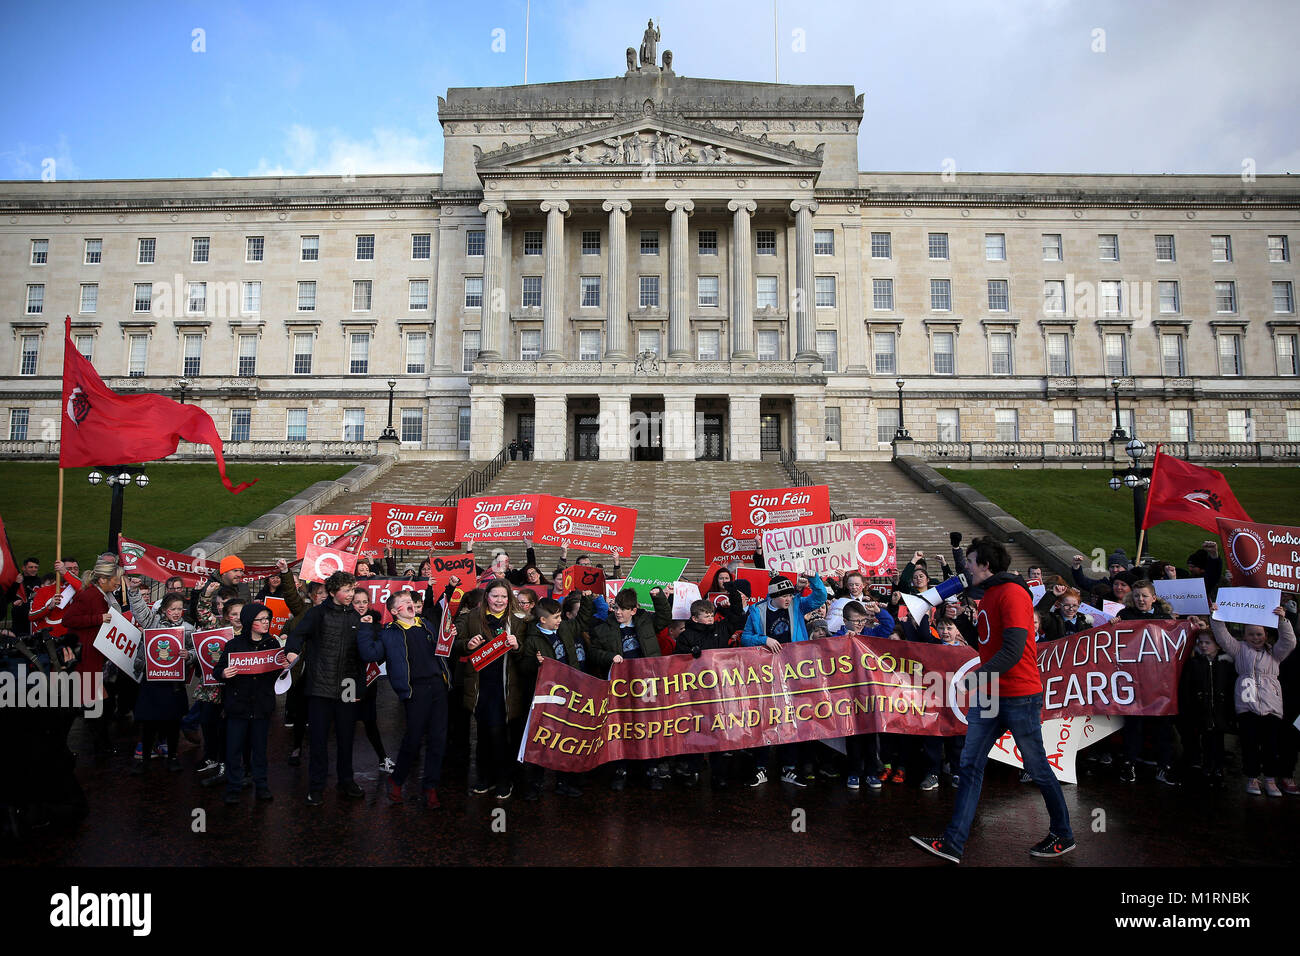 Ley de la lengua irlandesa de activistas, incluidos los alumnos de las escuelas de medio-irlandés en Irlanda del Norte, tomar parte en una protesta en los edificios del Parlamento Stormont en Belfast, por delante de una reunión con la Secretaría de Irlanda del Norte Karen Bradley. Foto de stock